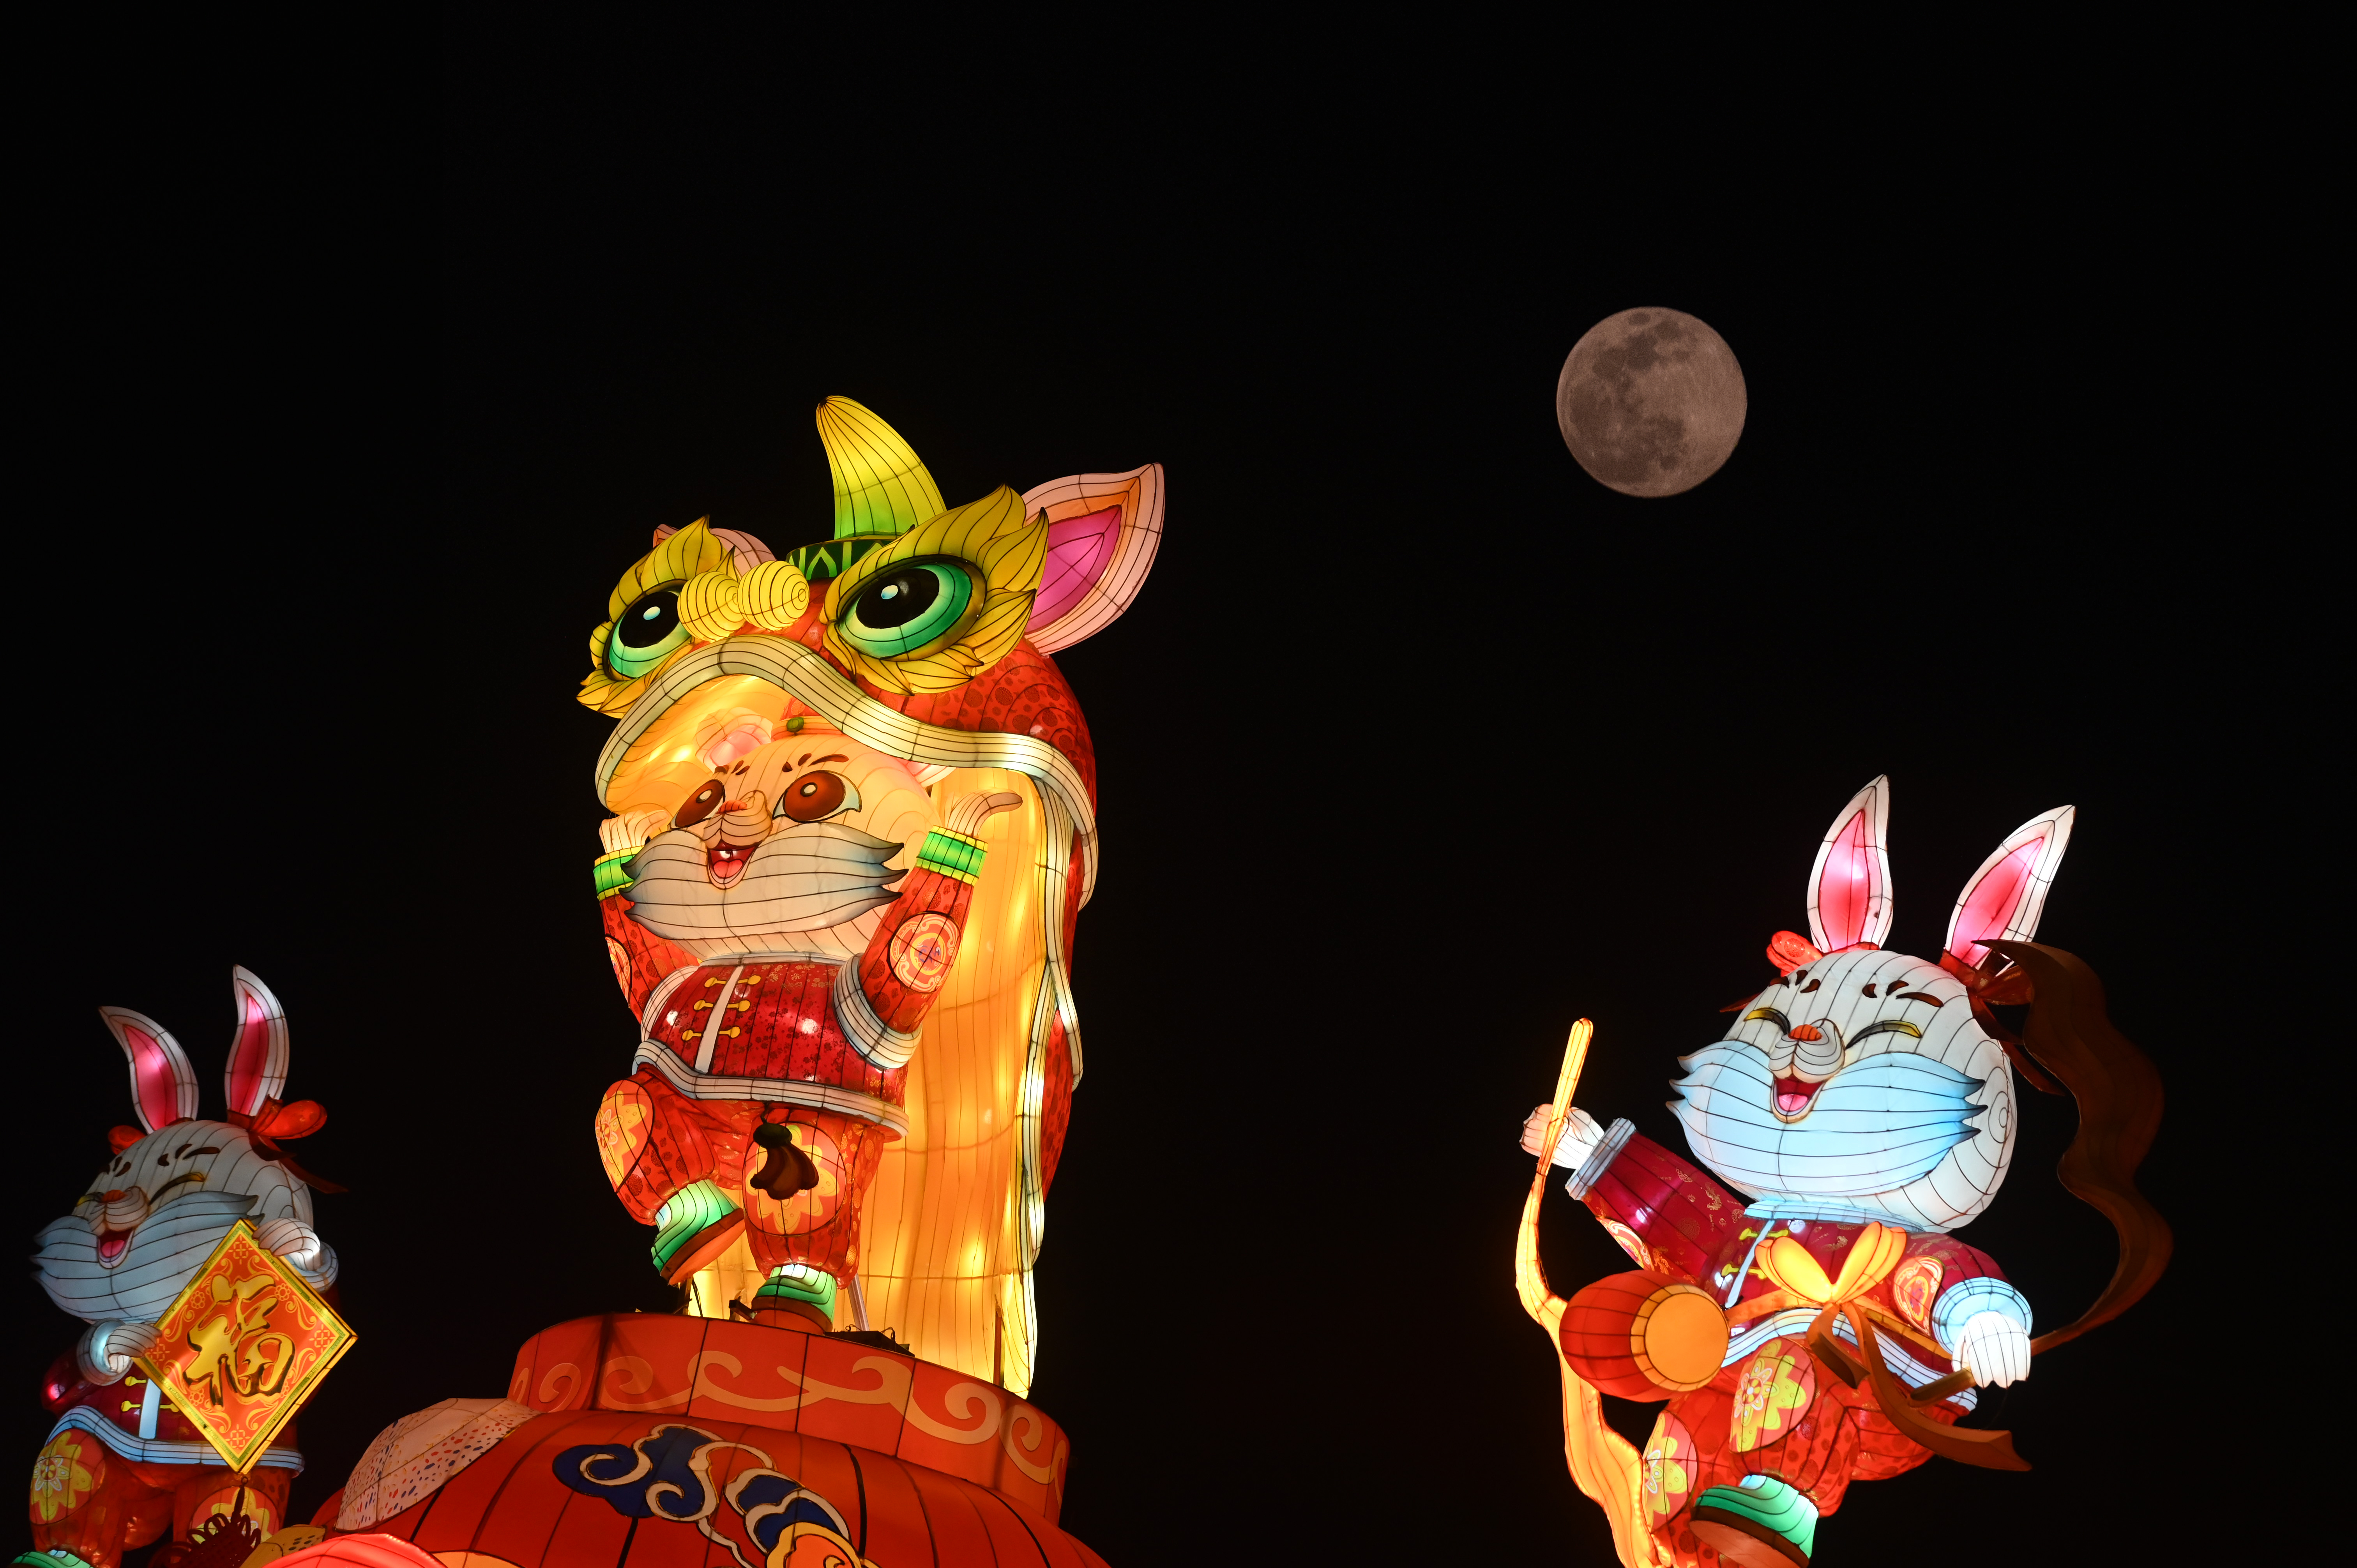 De volle maan is aan de nachtelijke hemel te zien achter drie kleurrijke lantaarns in de vorm van lachende dieren